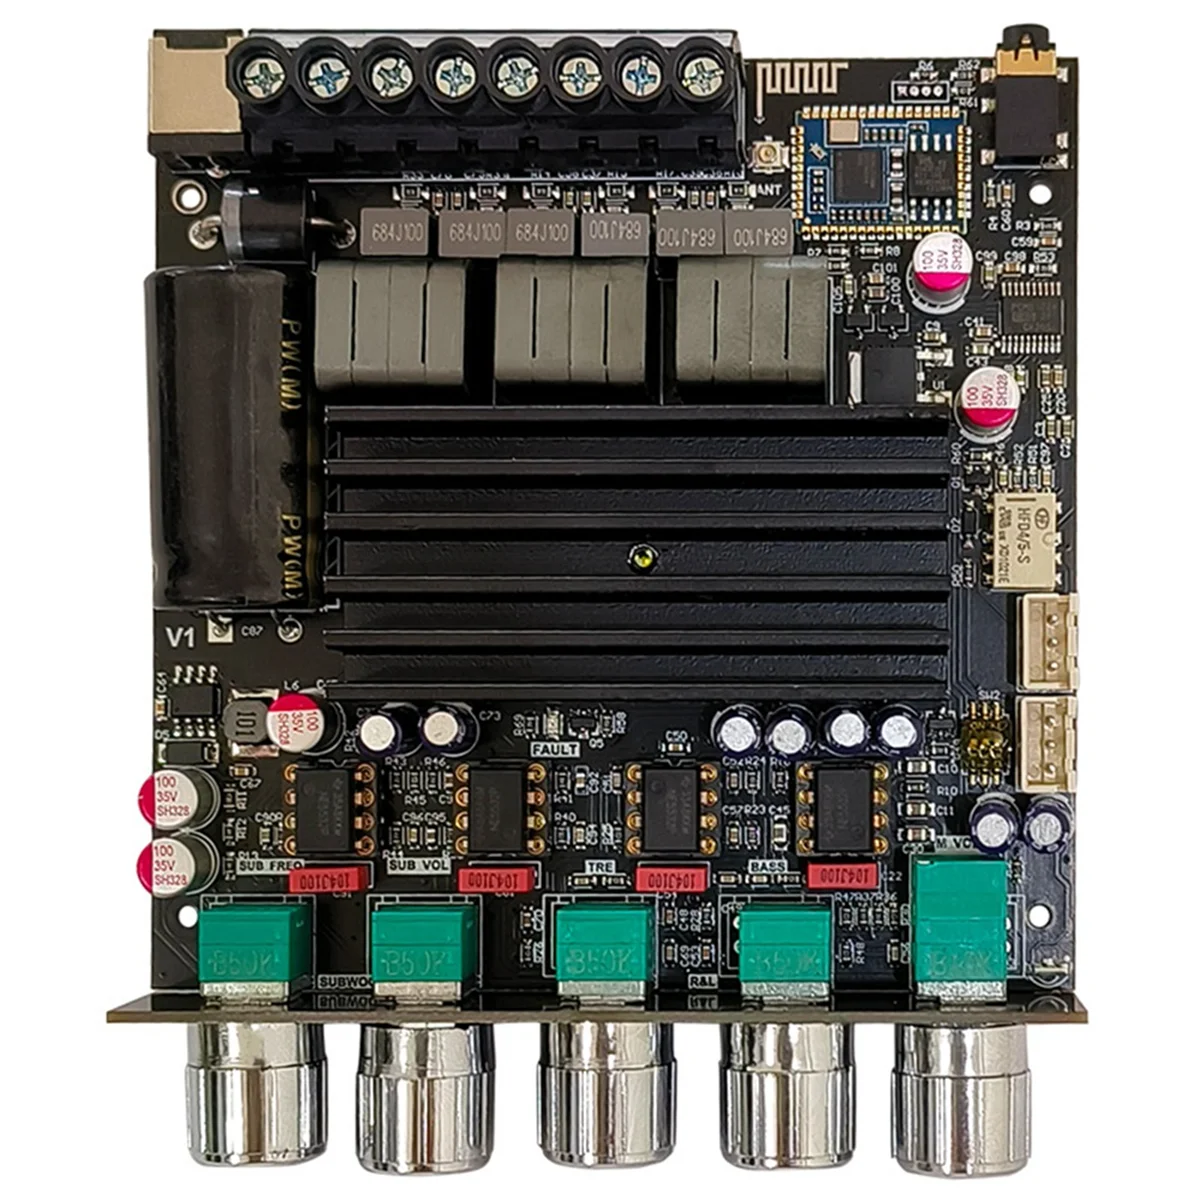 

ZK-APTX1 Bluetooth Power Amplifier Board 2.1Channel 2X100W+200W Subwoofer QCC3034 TPA3221 Digital Power Amplifier Module